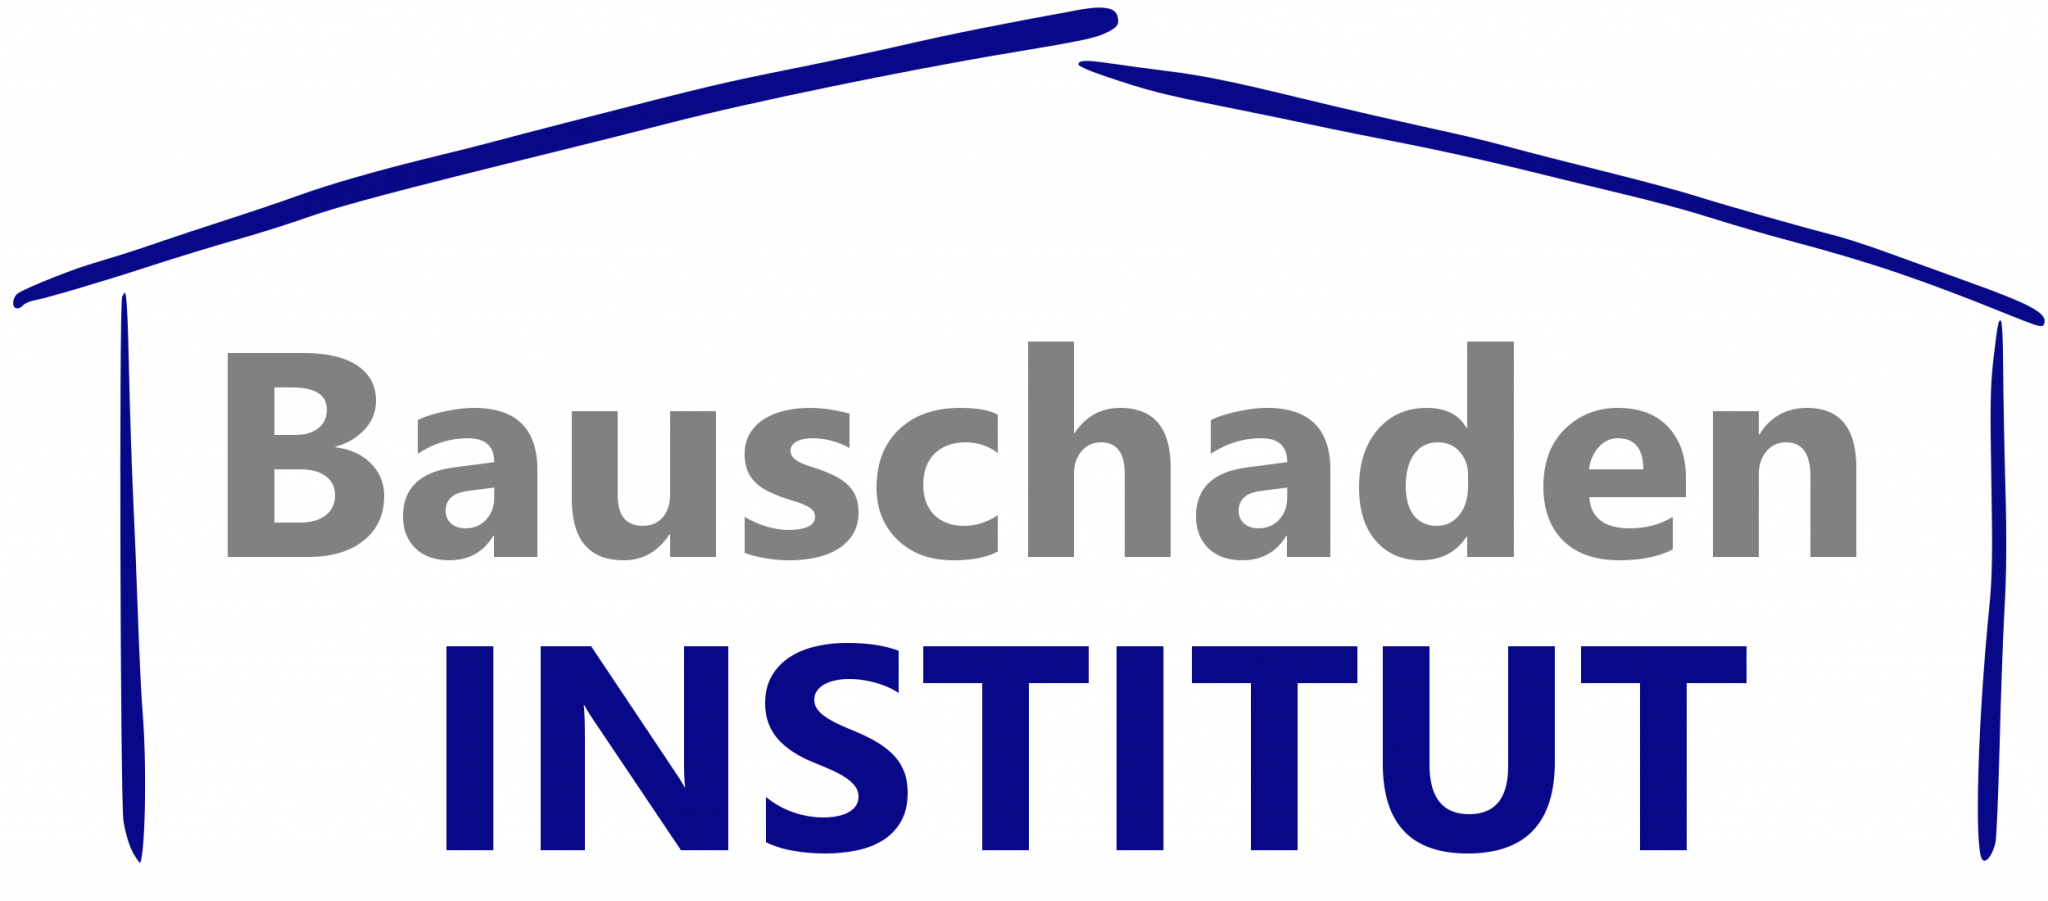 Bauschadeninstitut Logo: Das offizielle Logo des Bauschadeninstituts für qualifizierte Bauuntersuchungen und Gutachten